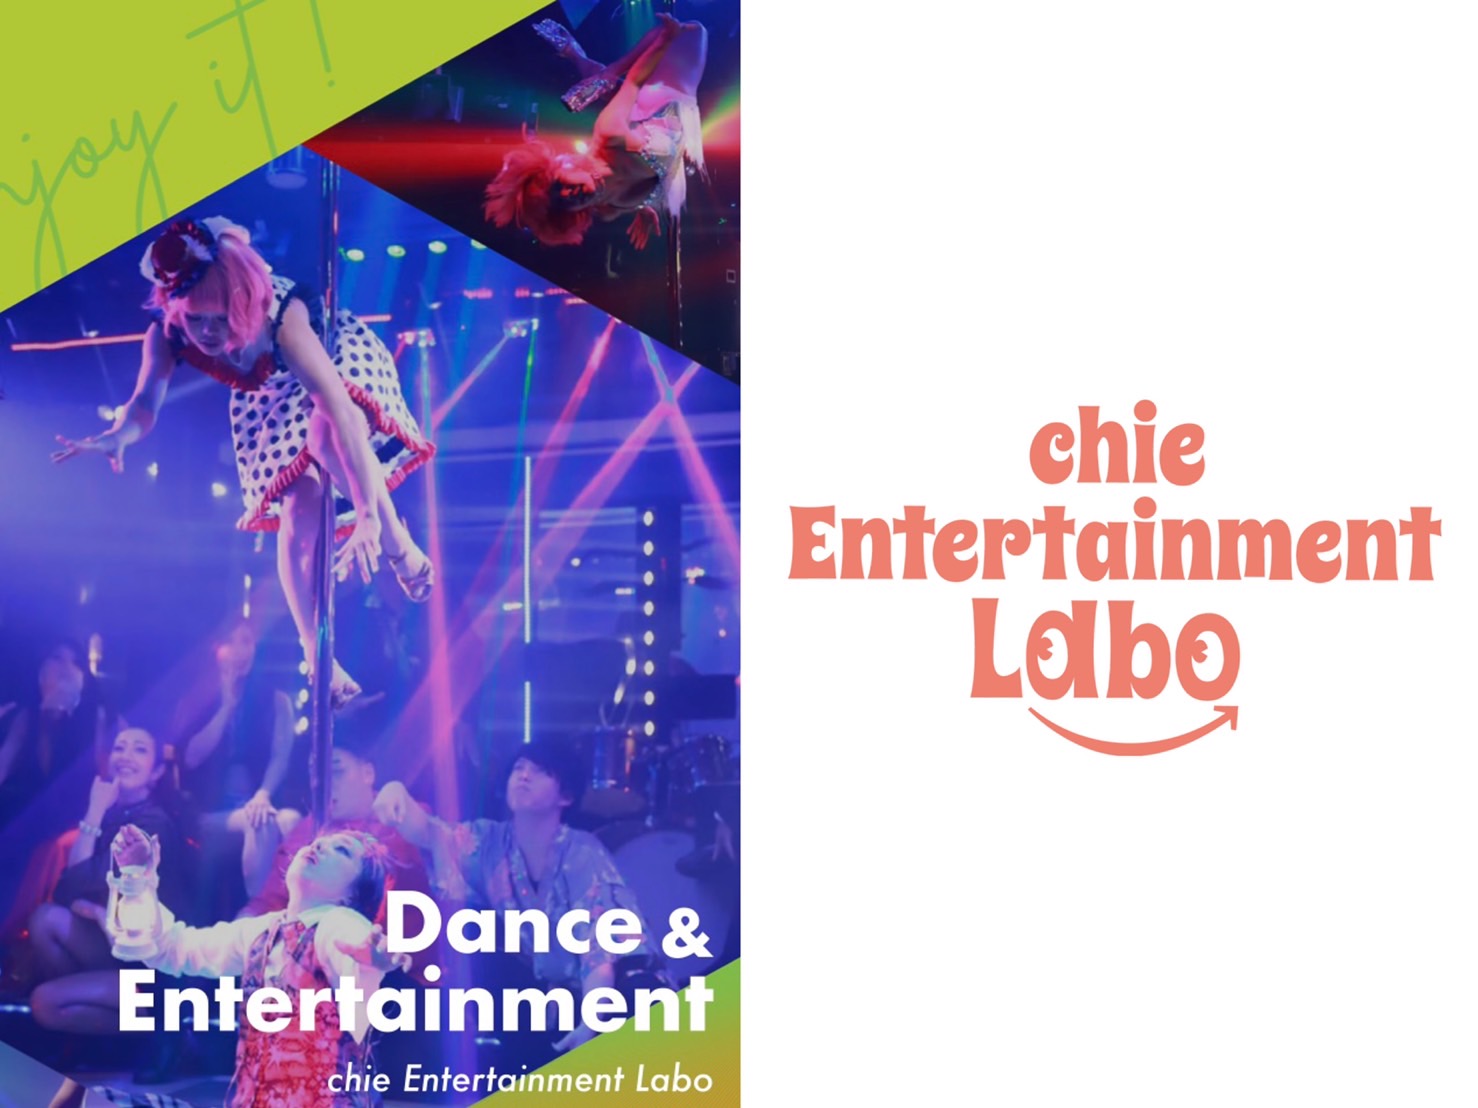 chie Entertainment Labo 十条